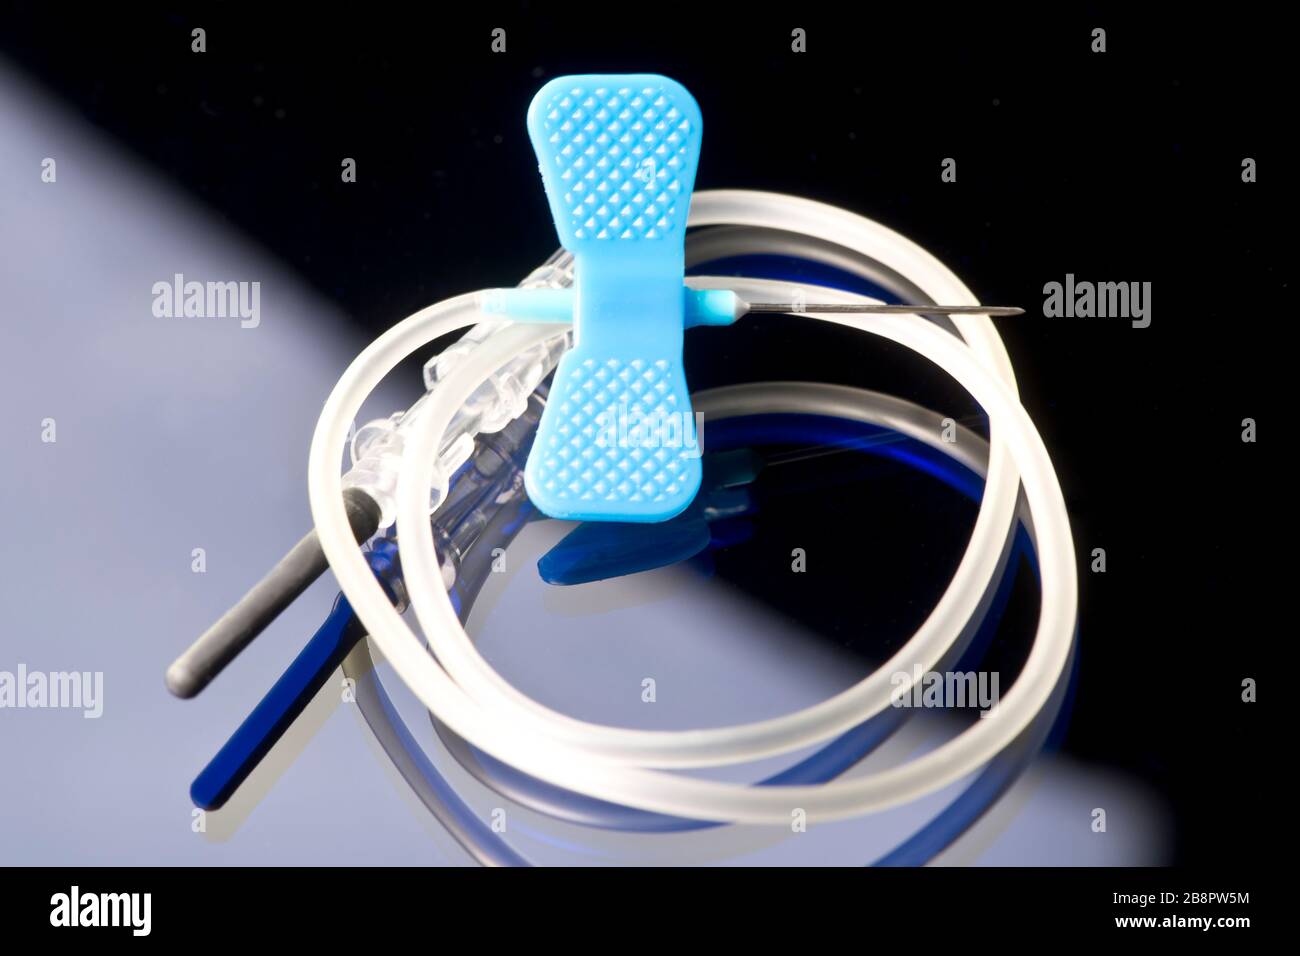 10 gauge blue IV catheter and IV tubing on dark blue background. Stock Photo